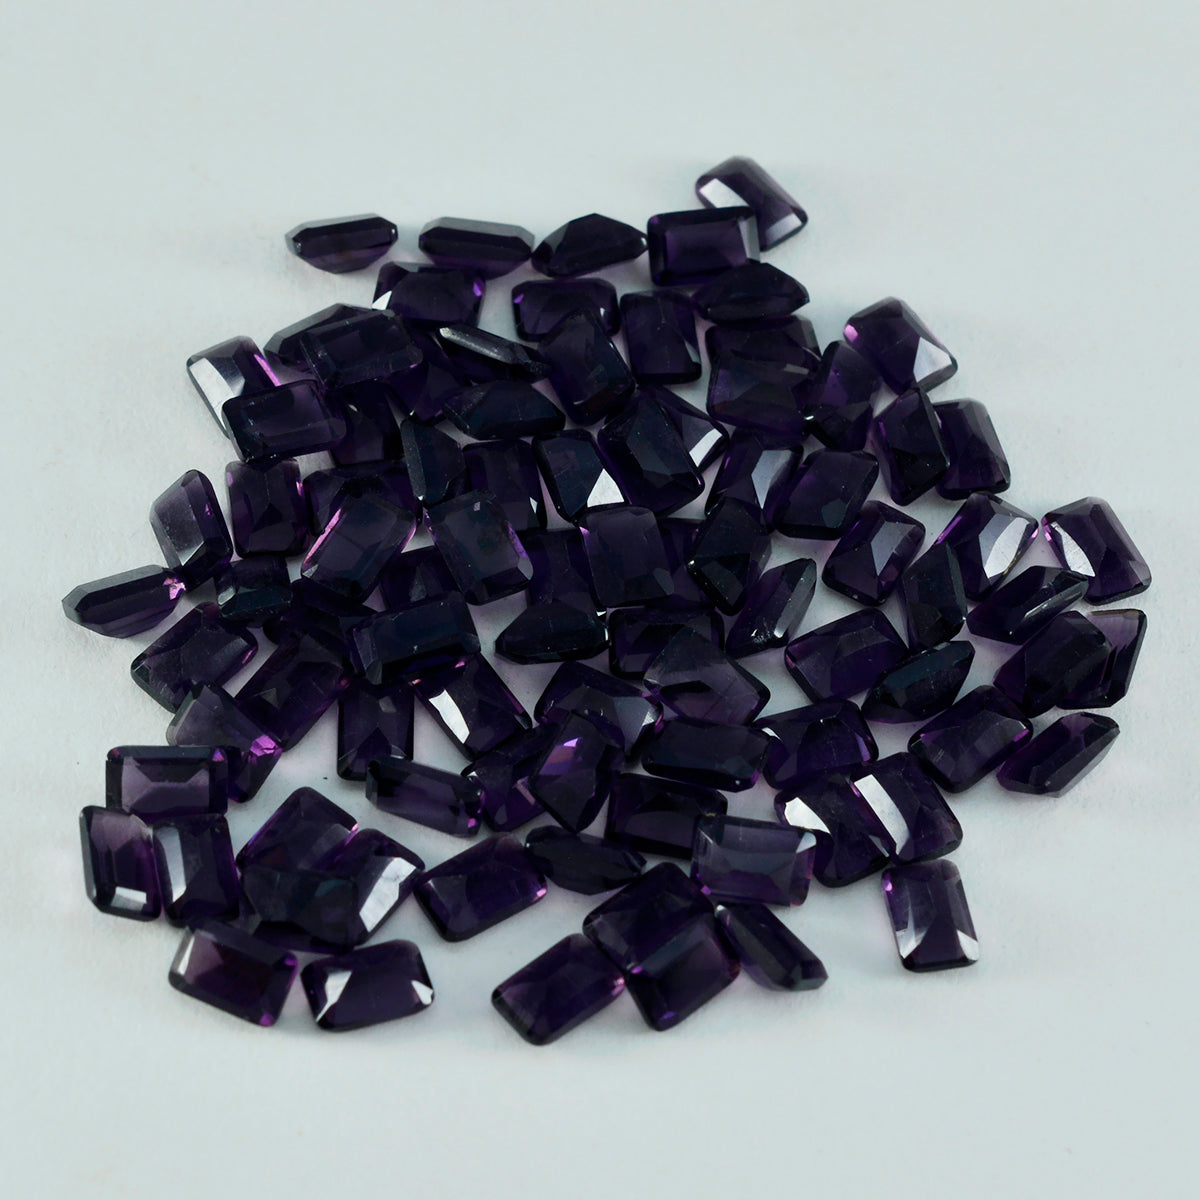 Riyogems 1 pièce d'améthyste violette cz à facettes 6x8mm forme octogonale qualité aaa pierre précieuse en vrac